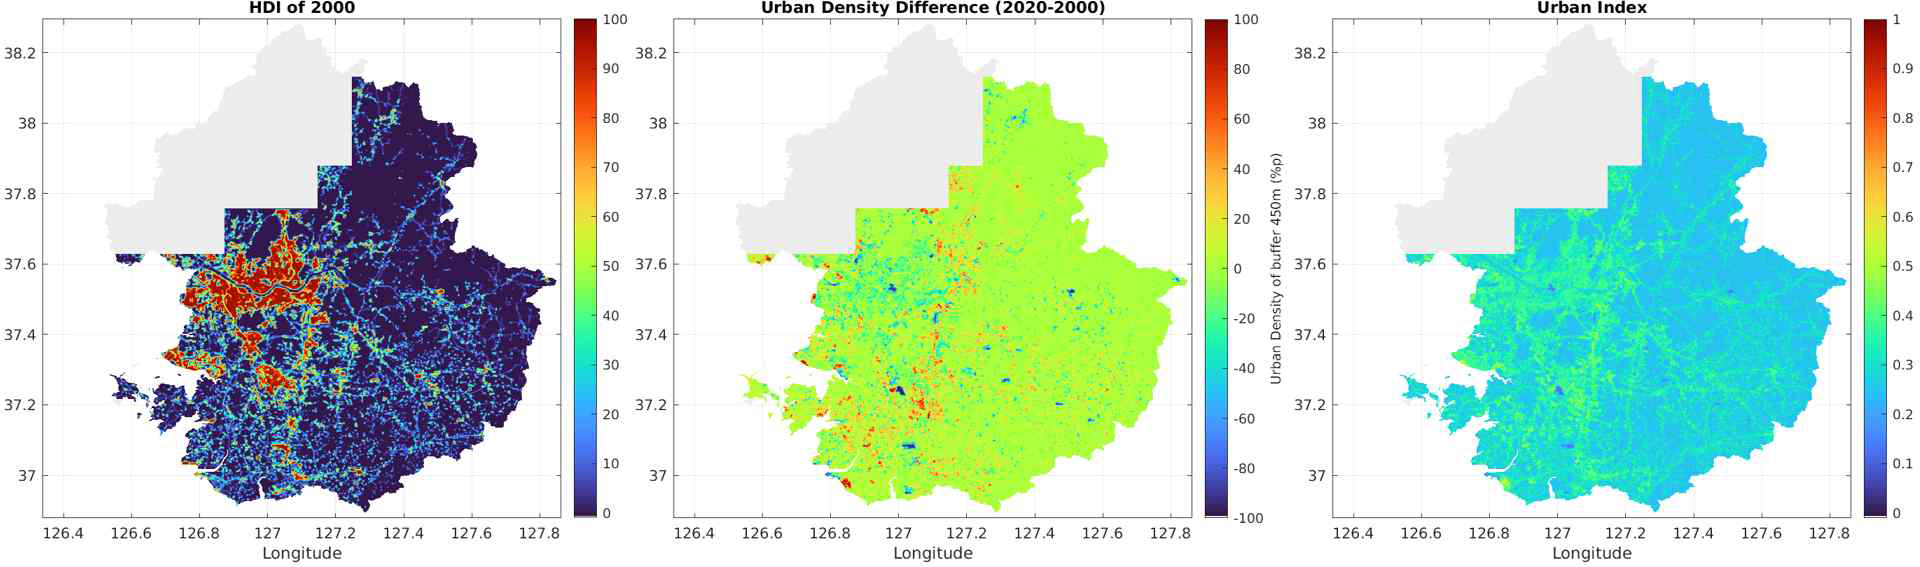 좌: 도시 토지피복 밀도 (각각 2000년도와 변화량), 우: 도시화 지수